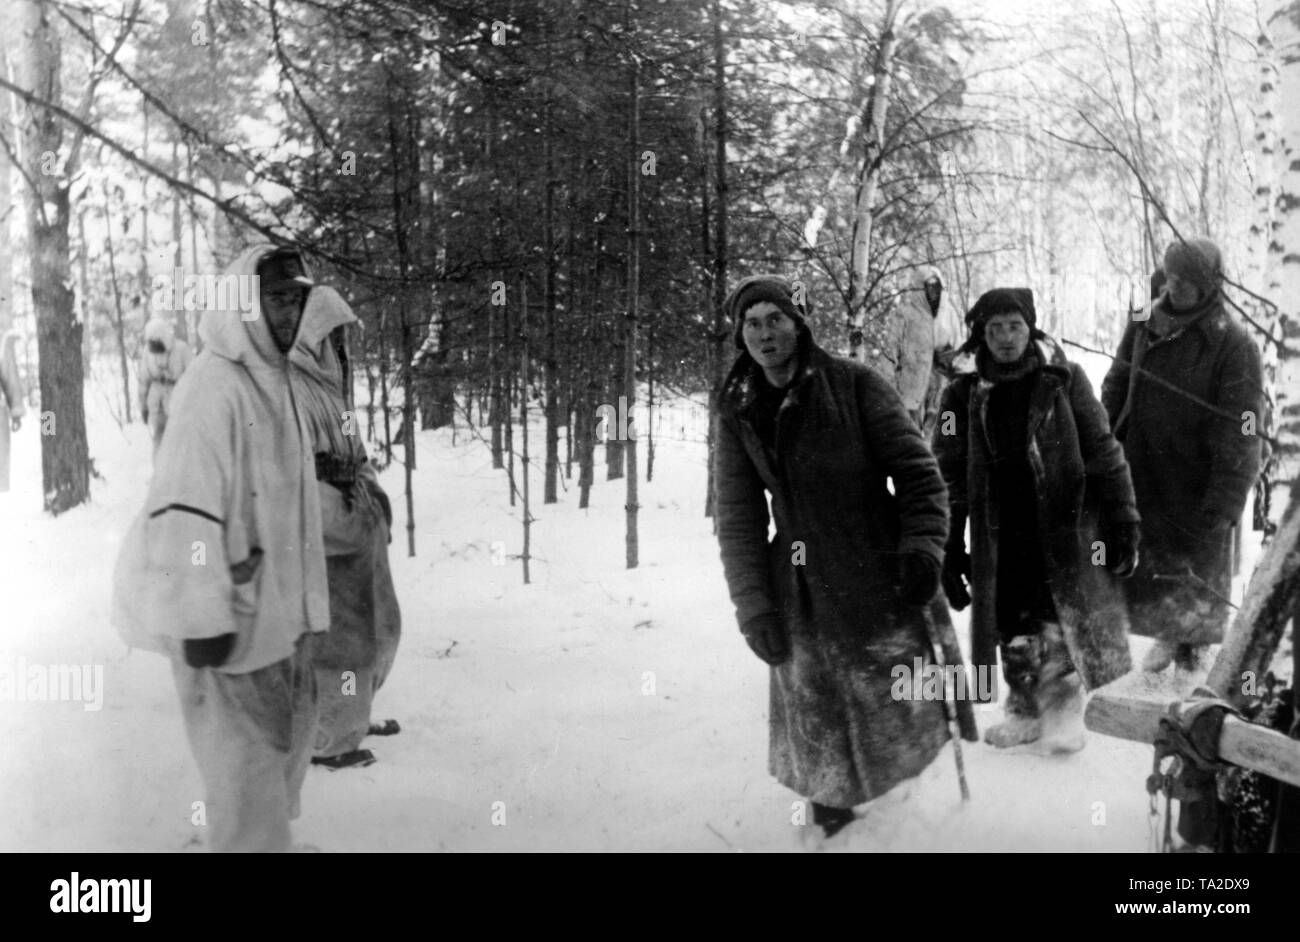 Dans une forêt à l'ouest de Moscou, les soldats allemands sont la capture d'ennemis russe de Sibérie, les troupes de montagne. (Photo : PK correspondant de guerre c. Hoermann). Banque D'Images